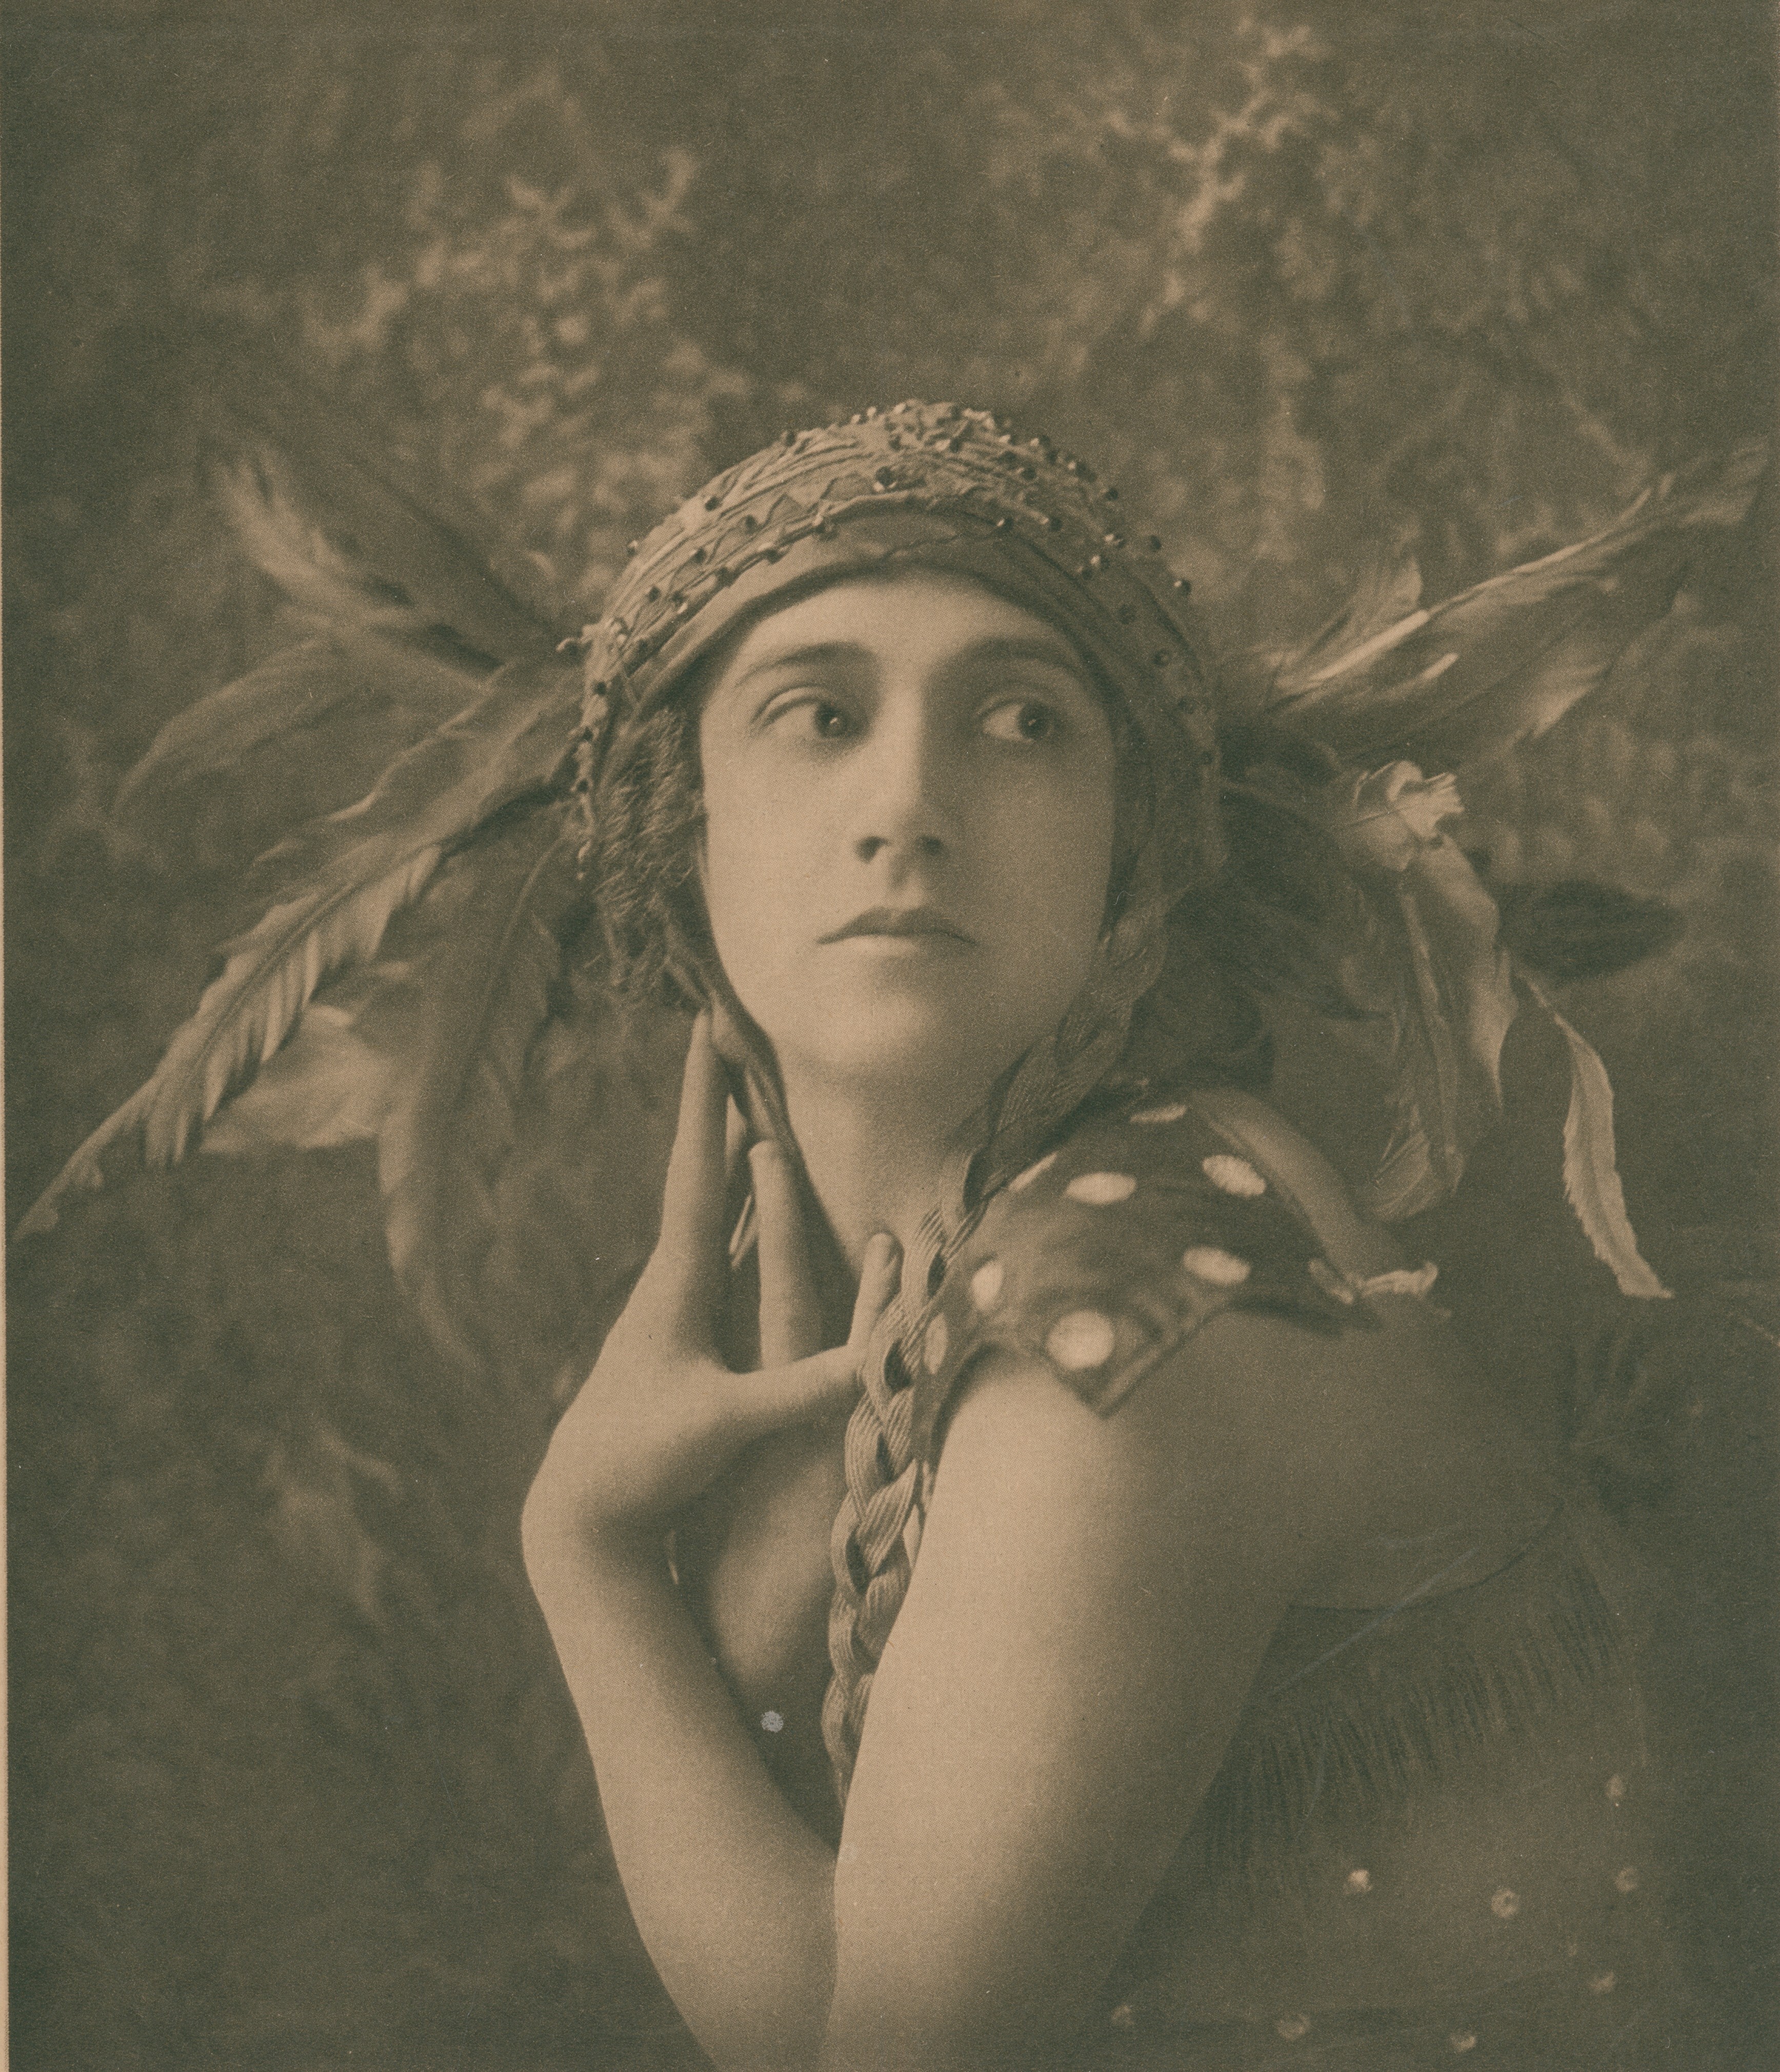 Тамара Карсавина в балете Жар-птица, ок. 1911. Фотограф Underwood and Underwood